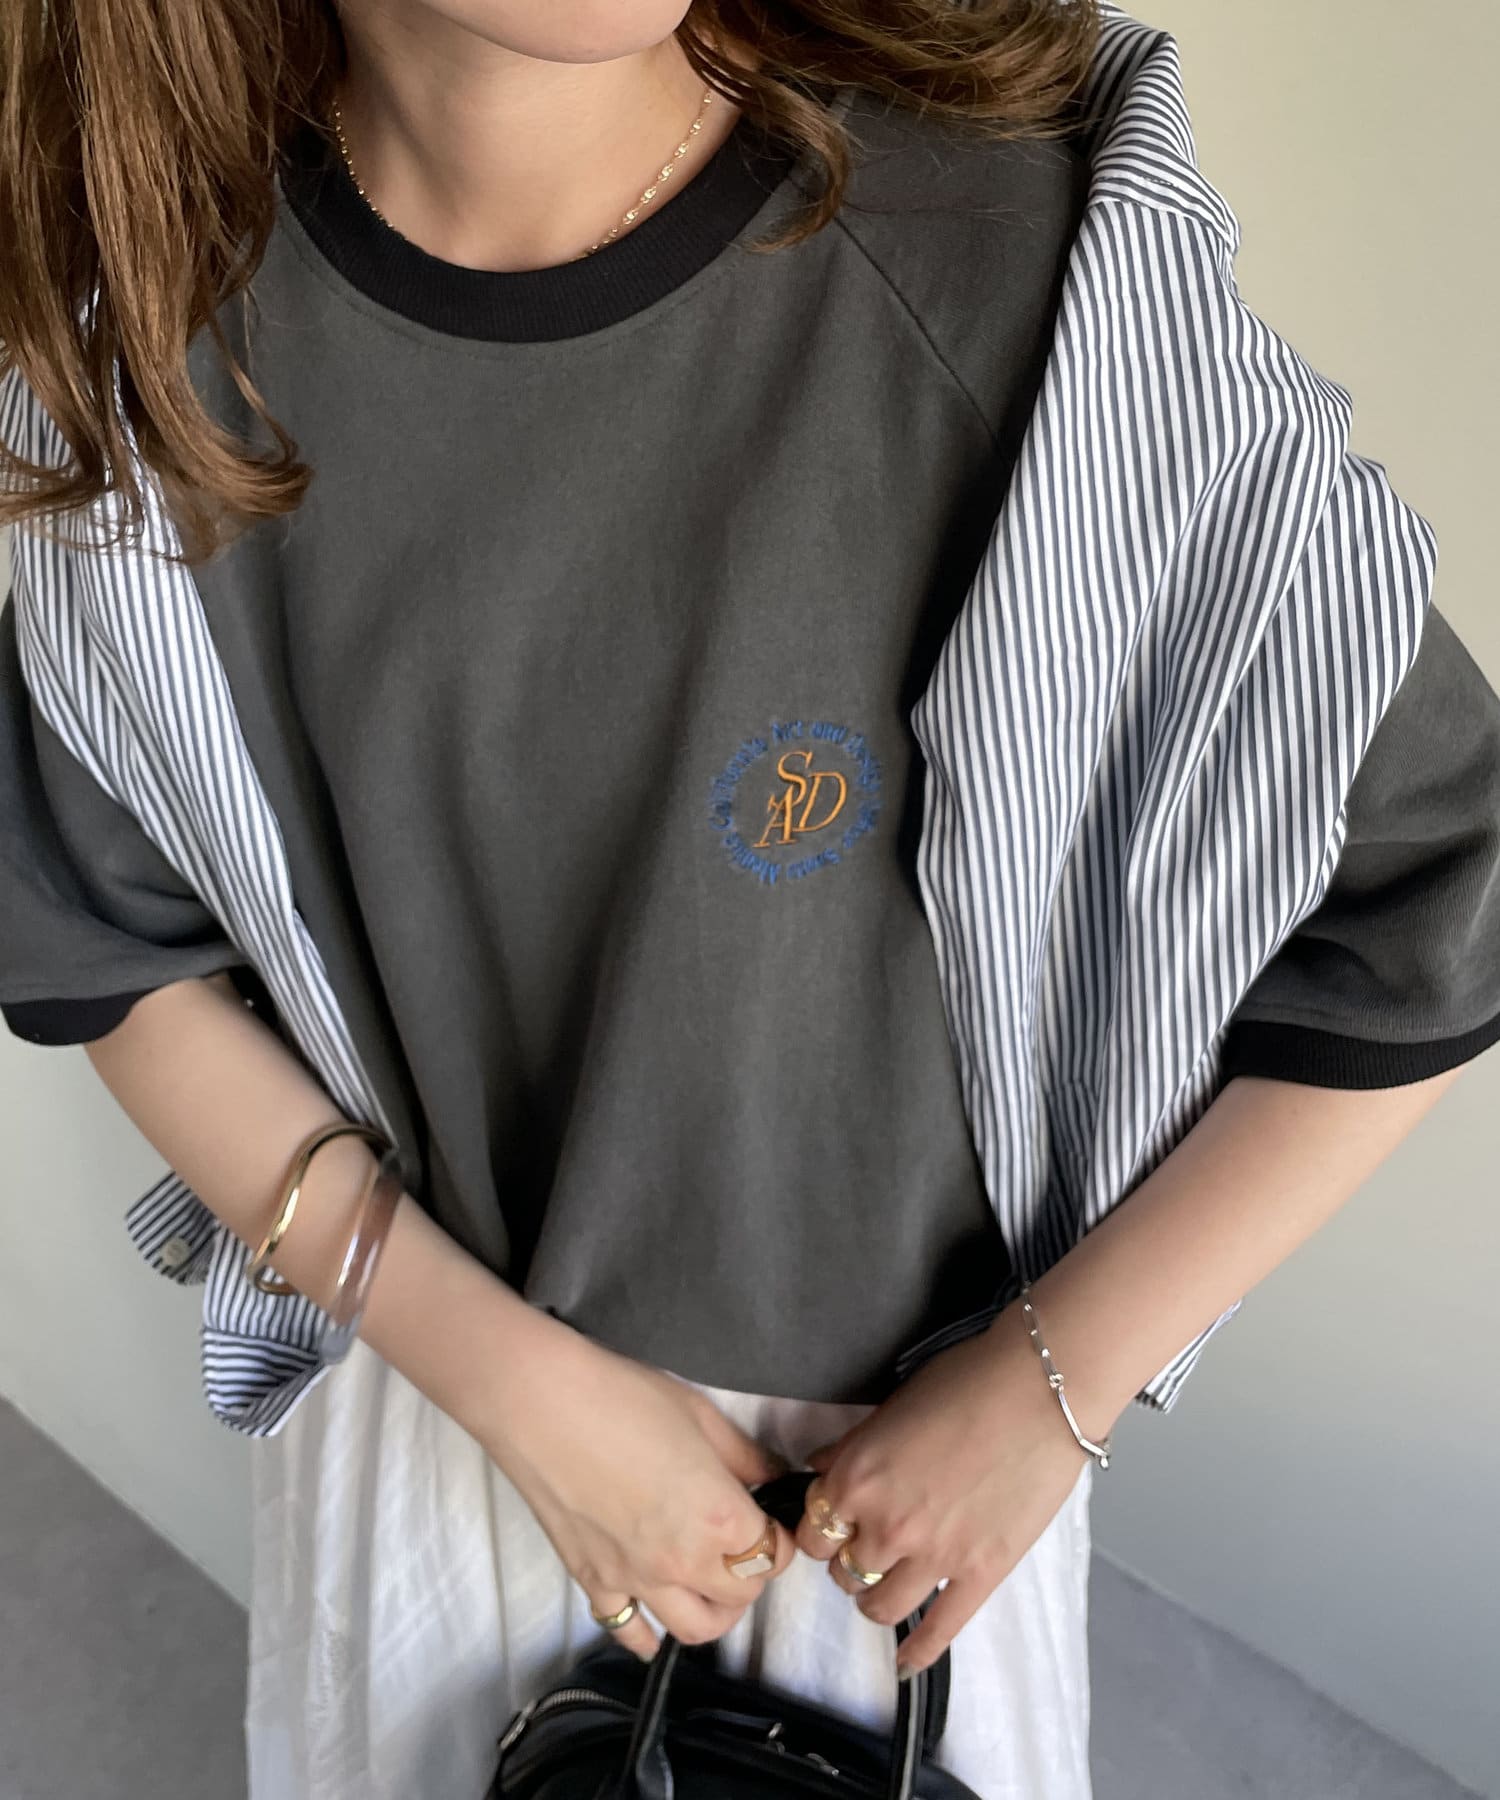 Discoat(ディスコート) ピグメントワンポイント刺繍リンガーTシャツ